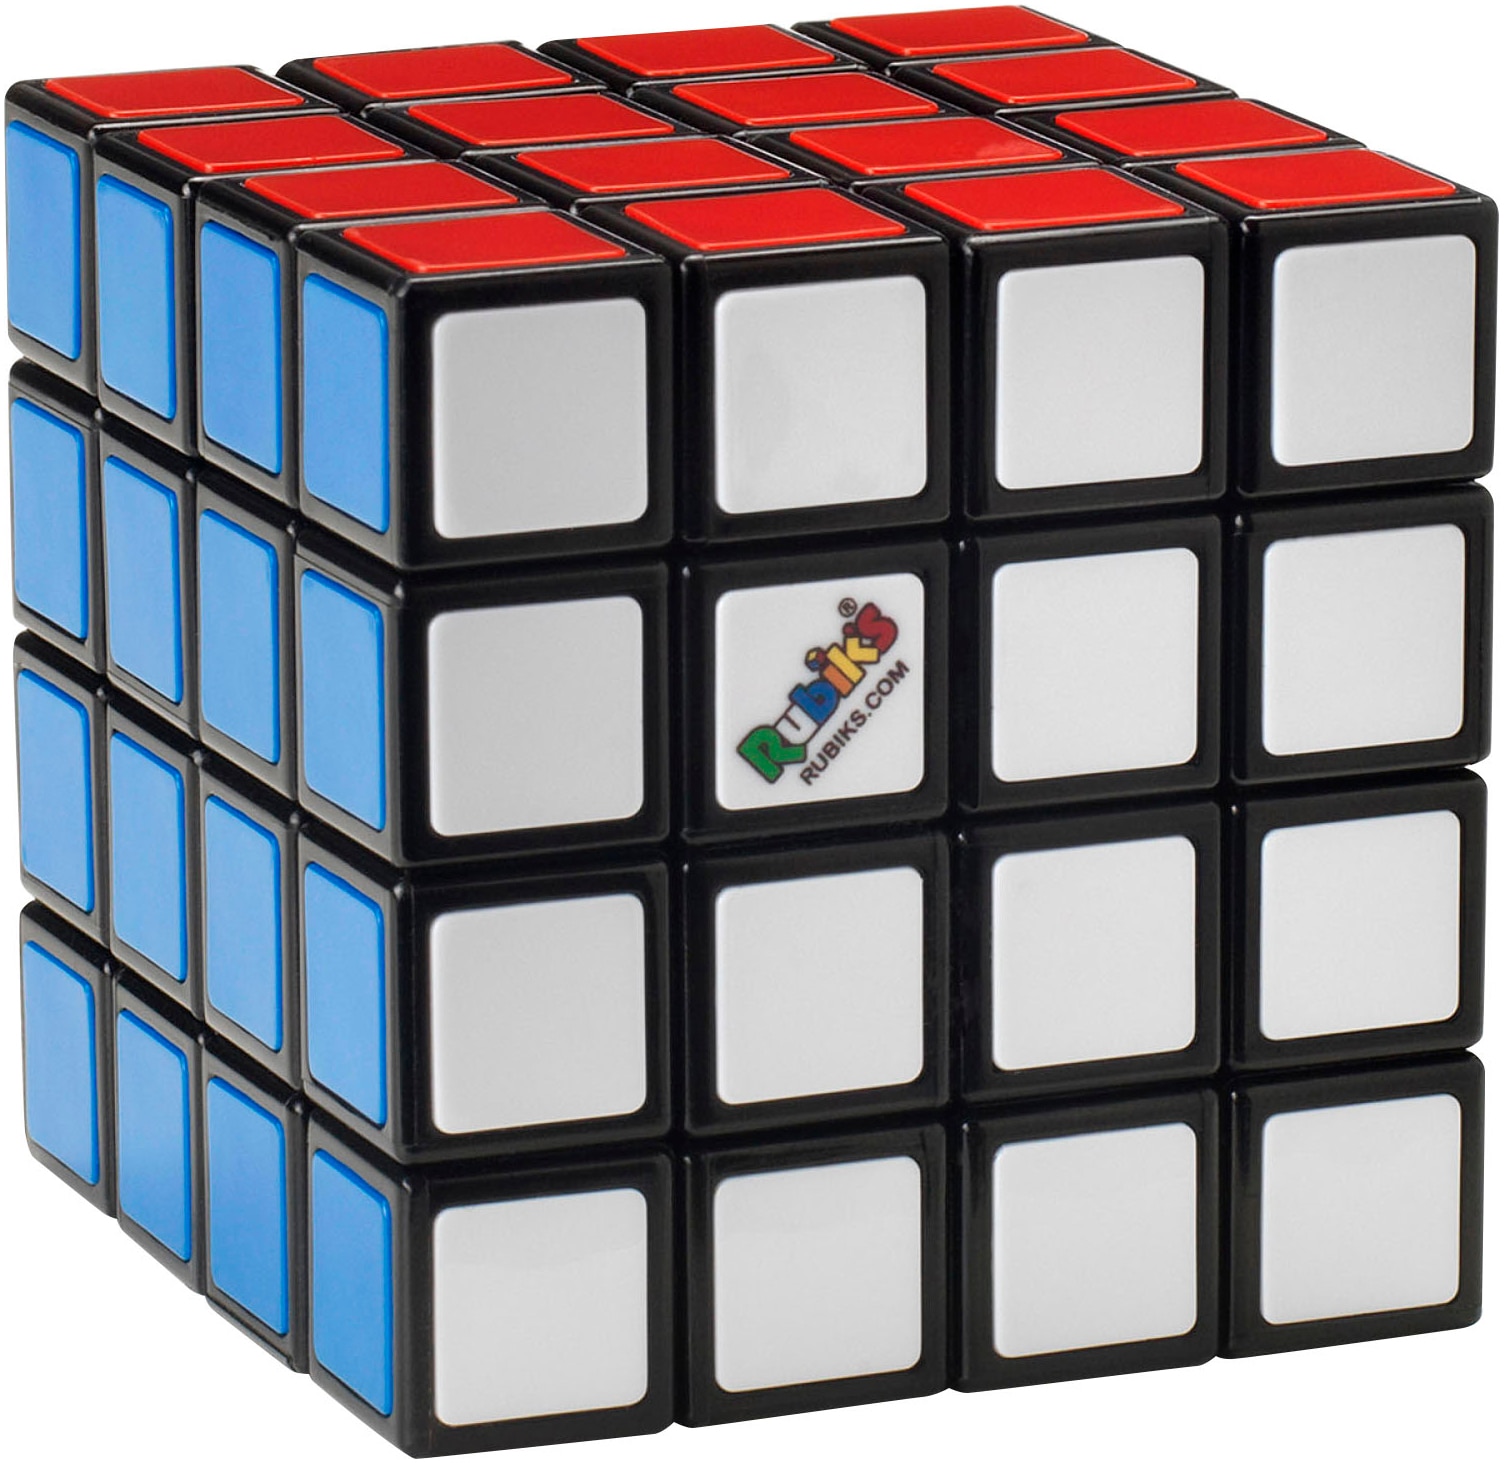 Spin Master Spiel »Rubik's - 4x4 Master«